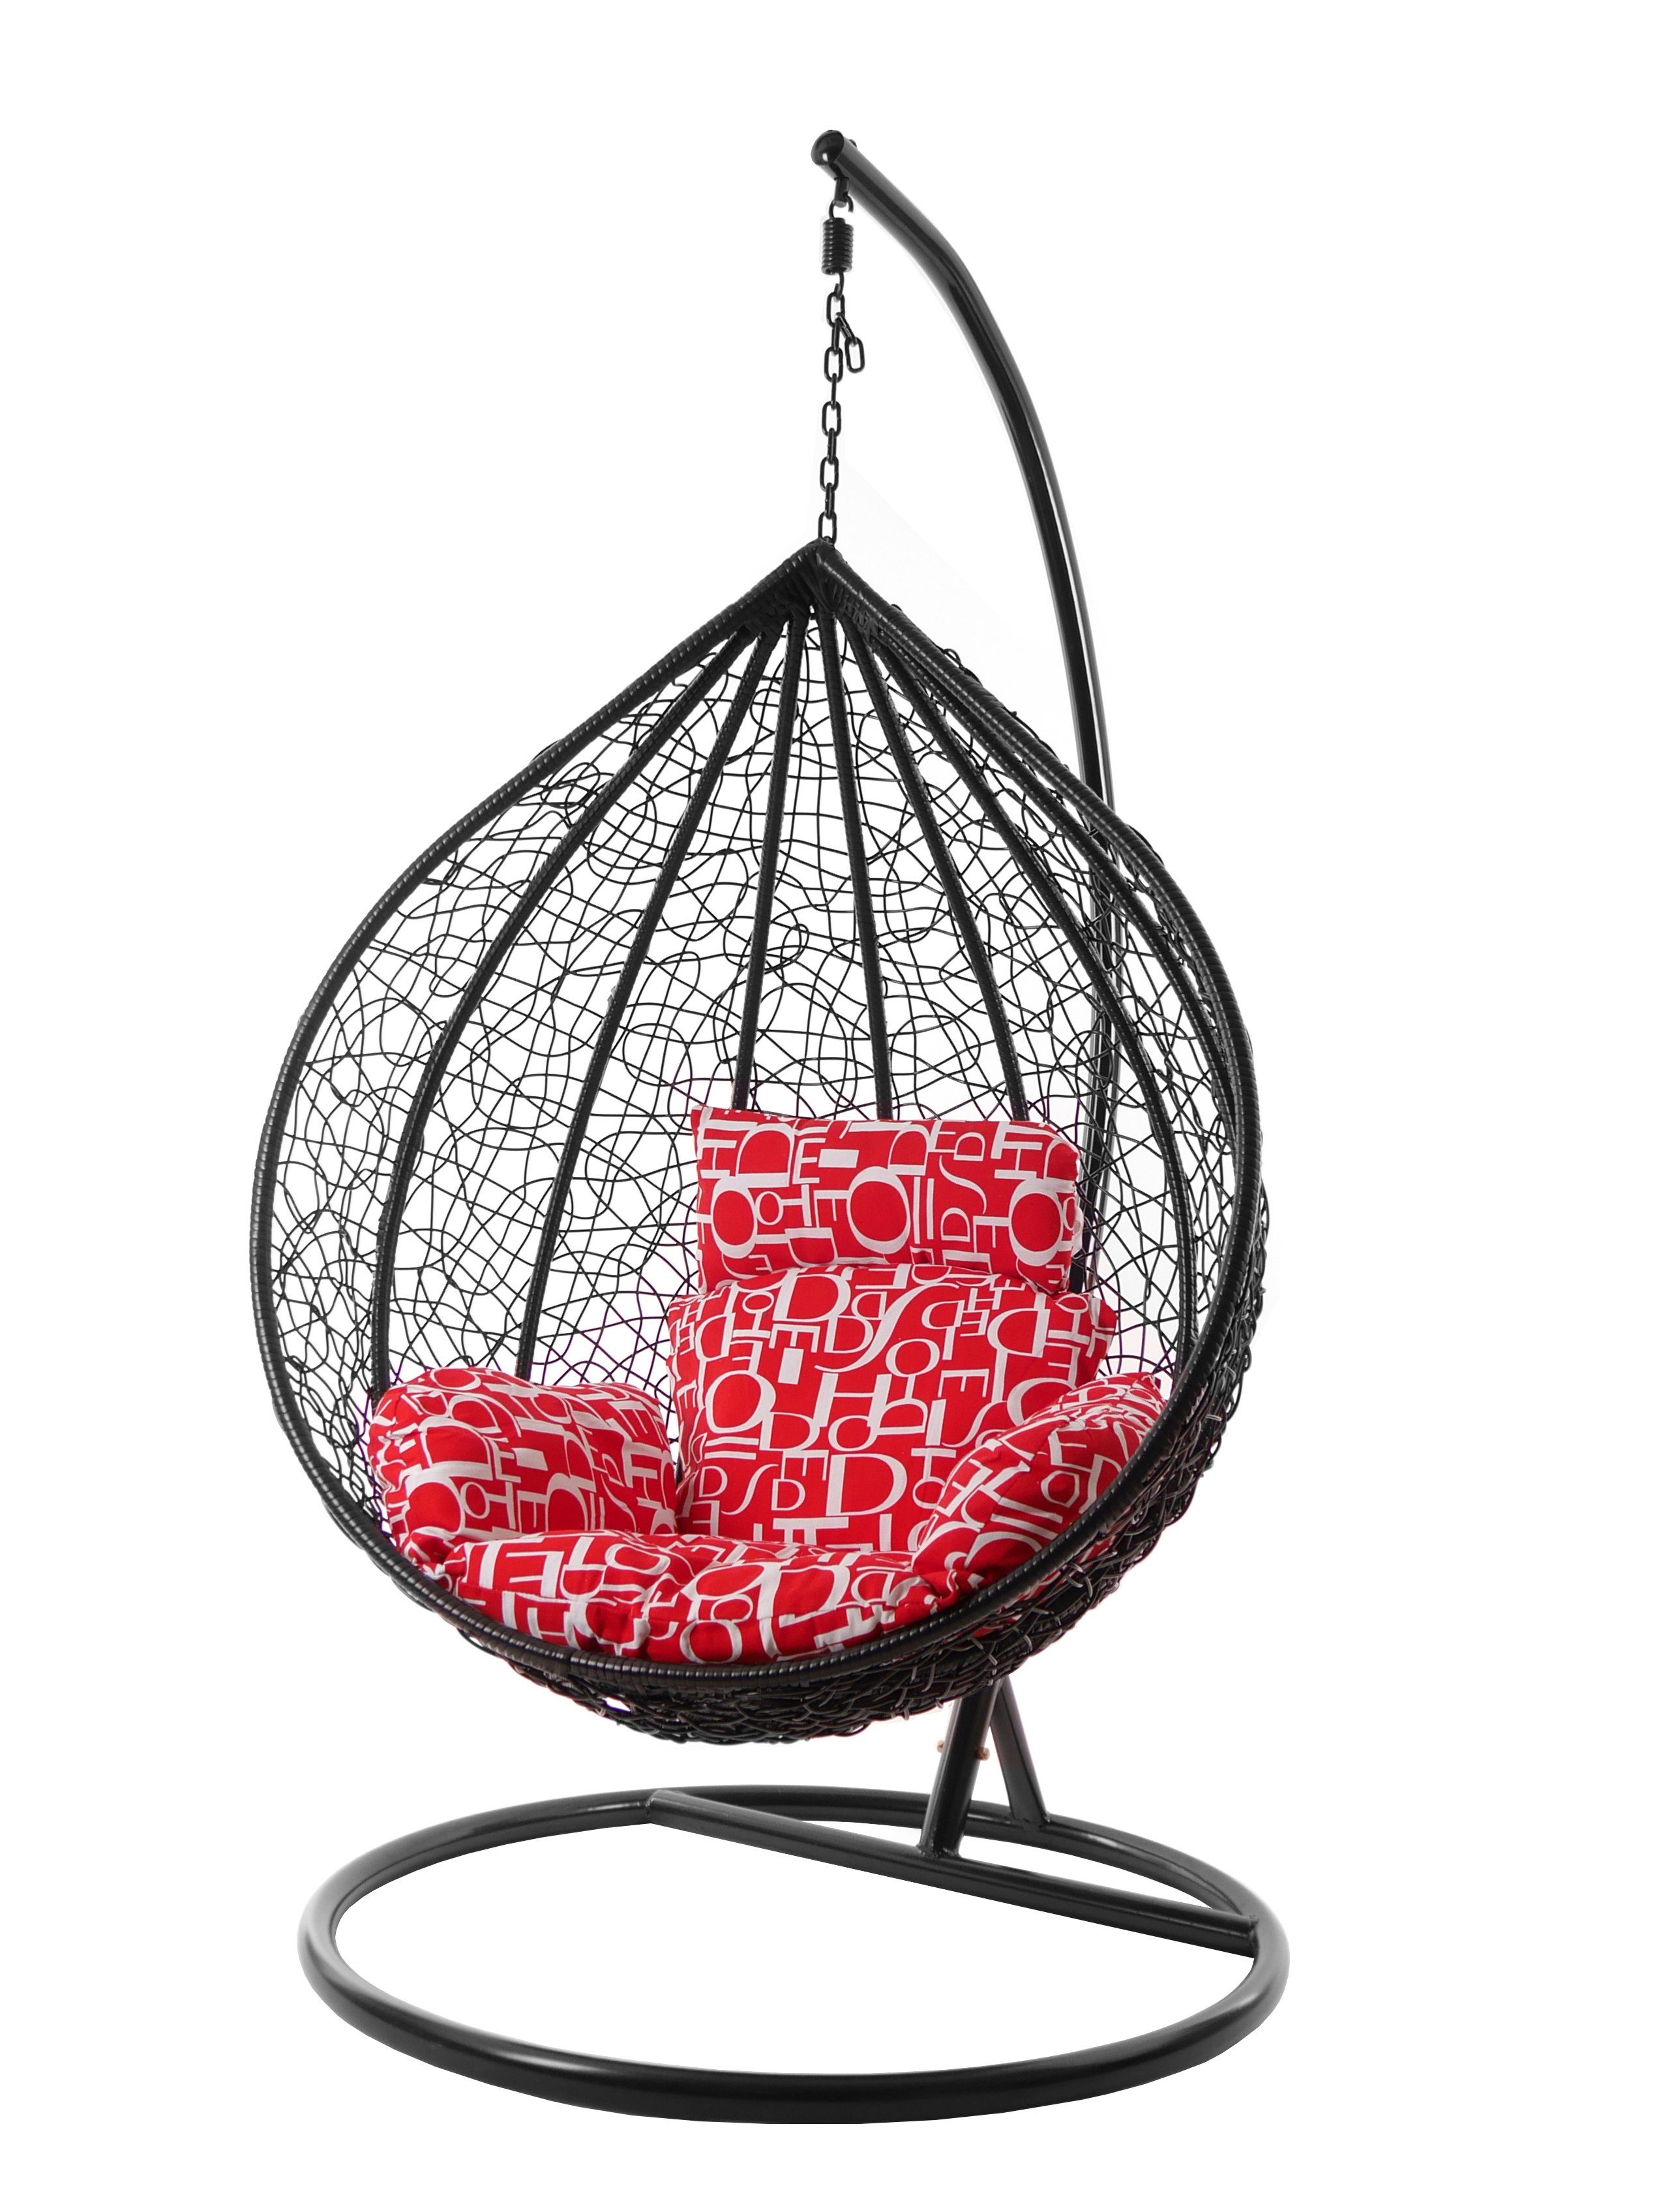 KIDEO Hängesessel Hängesessel MANACOR schwarz, XXL Swing Chair, Hängesessel mit Gestell und Kissen, Nest-Kissen buchstabenmuster (3100 red letter)